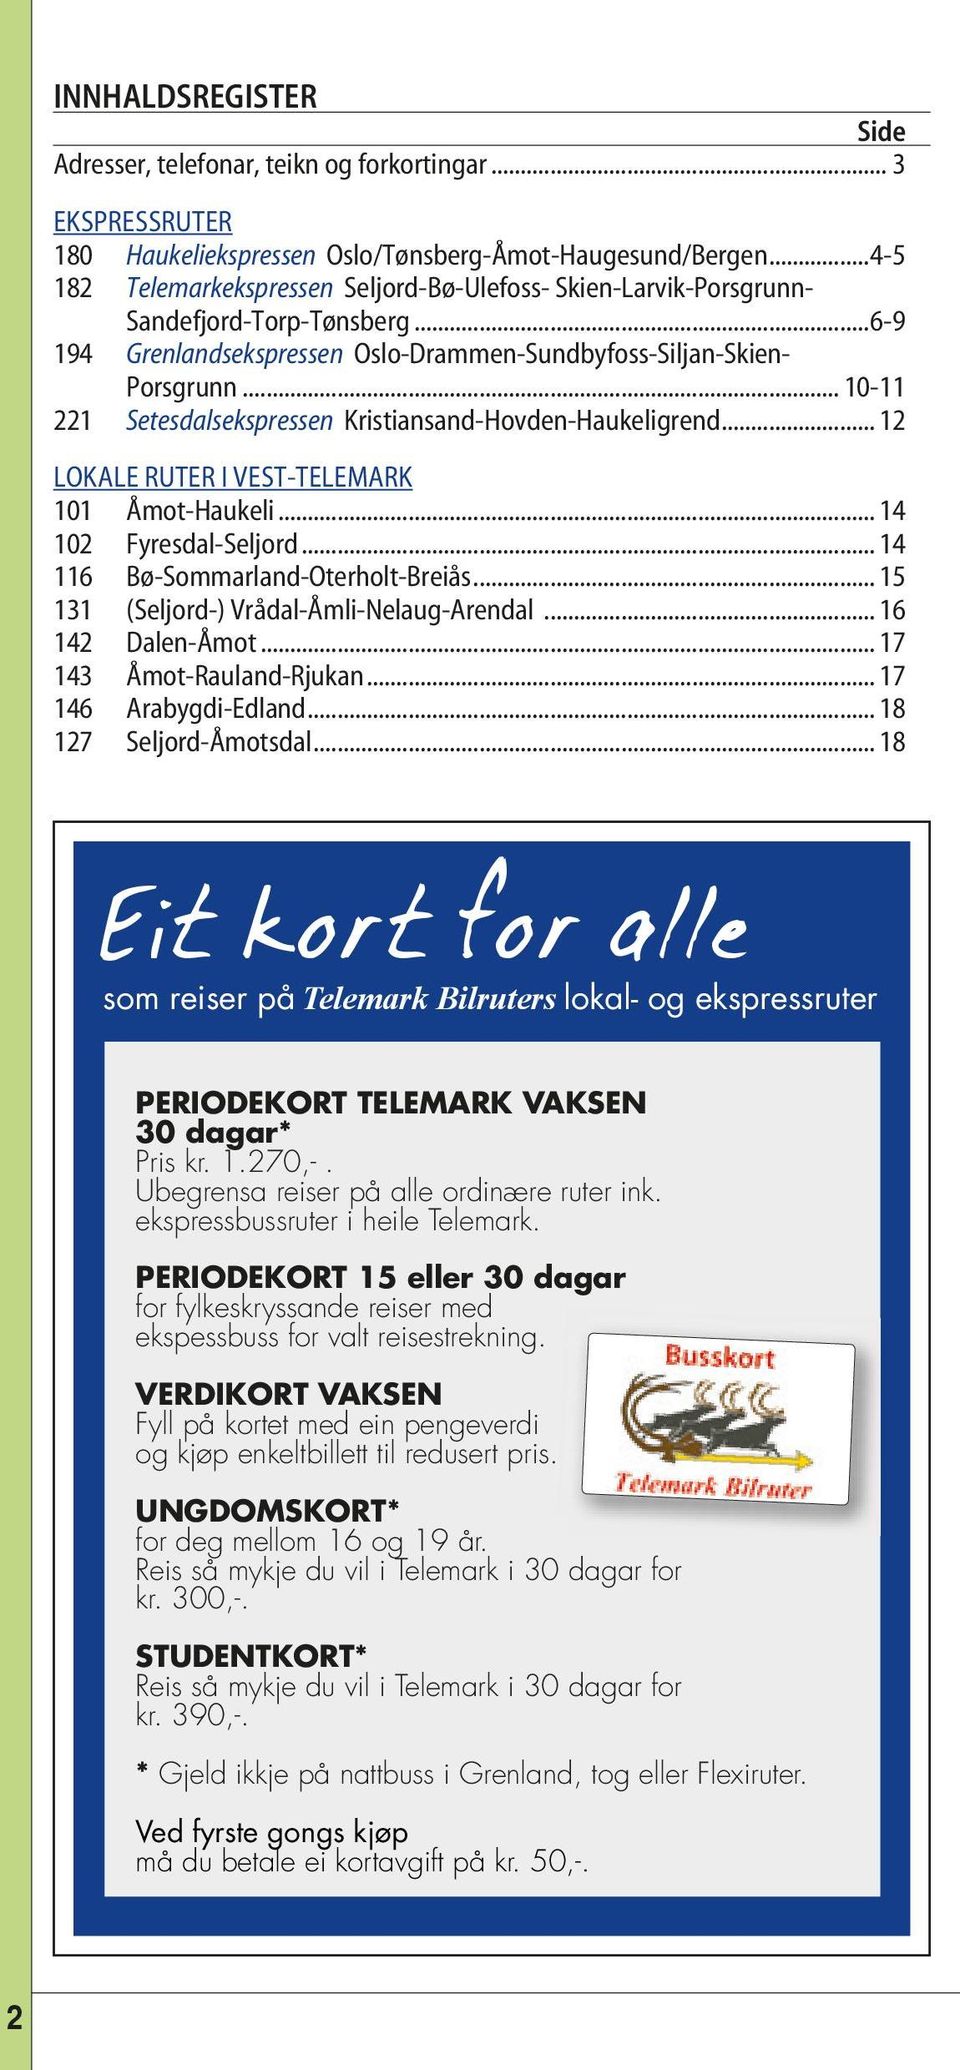 .. 10-11 221 Setesdalsekspressen Kristiansand-Hovden-Haukeligrend... 12 LOKALE RUTER I VEST-TELEMARK 101 Åmot-Haukeli... 14 102 Fyresdal-Seljord... 14 116 Bø-Sommarland-Oterholt-Breiås.